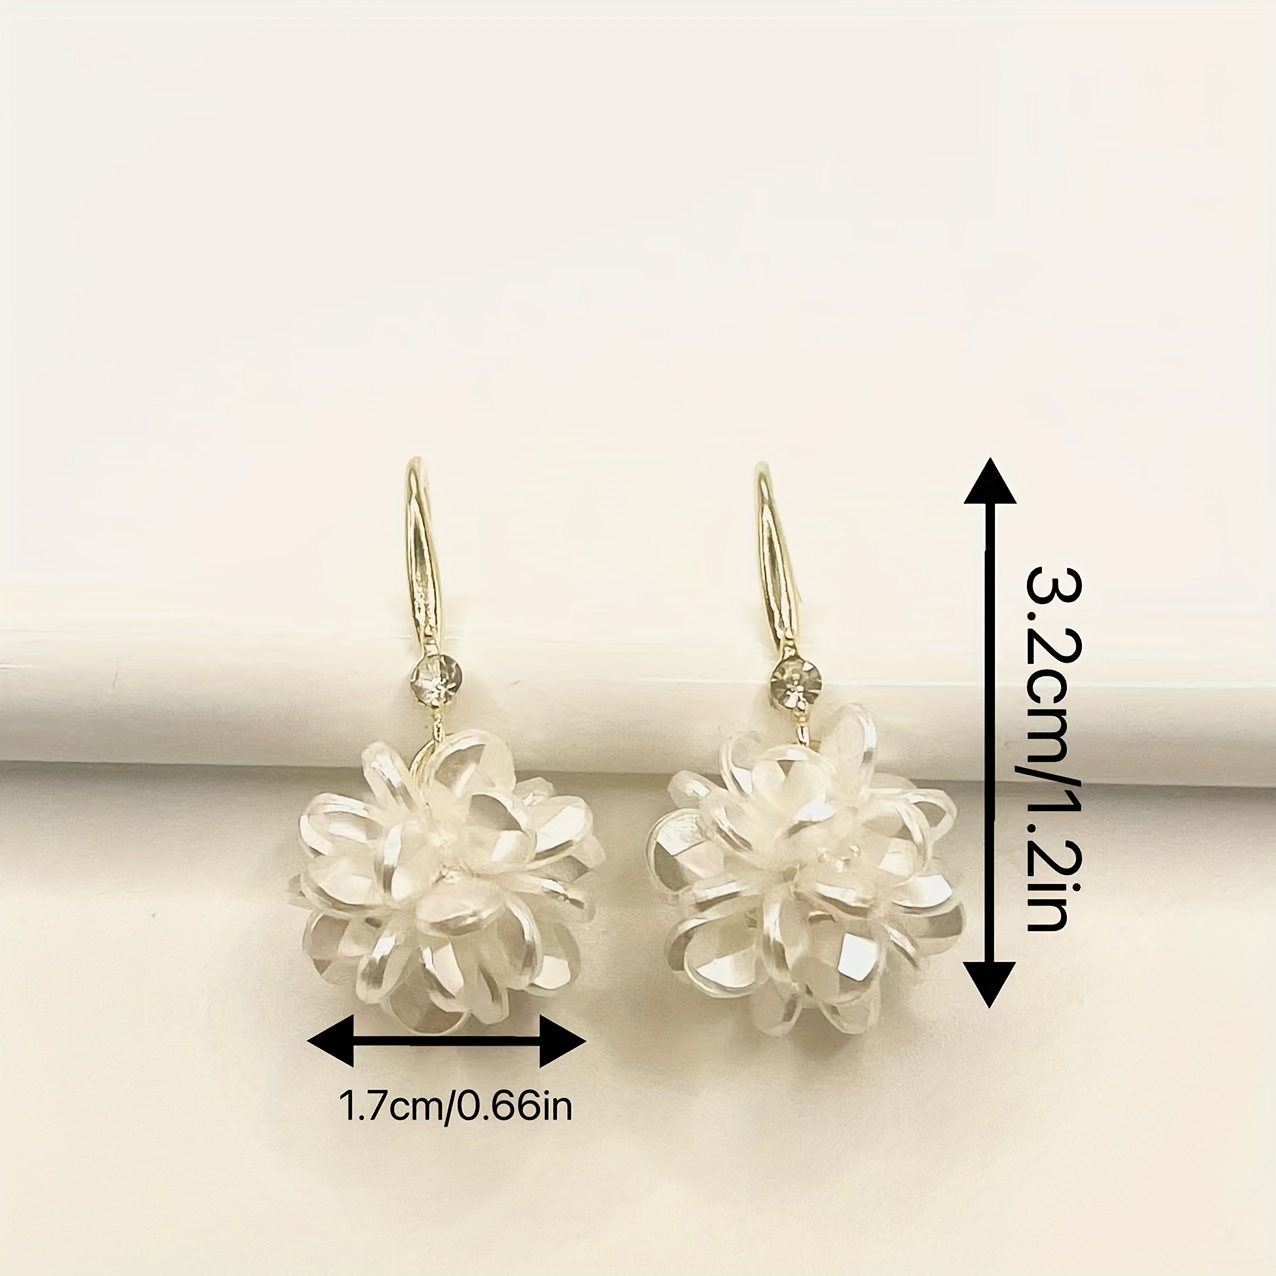  Fashion Earrings Flower Earrings for Women Sweet Light